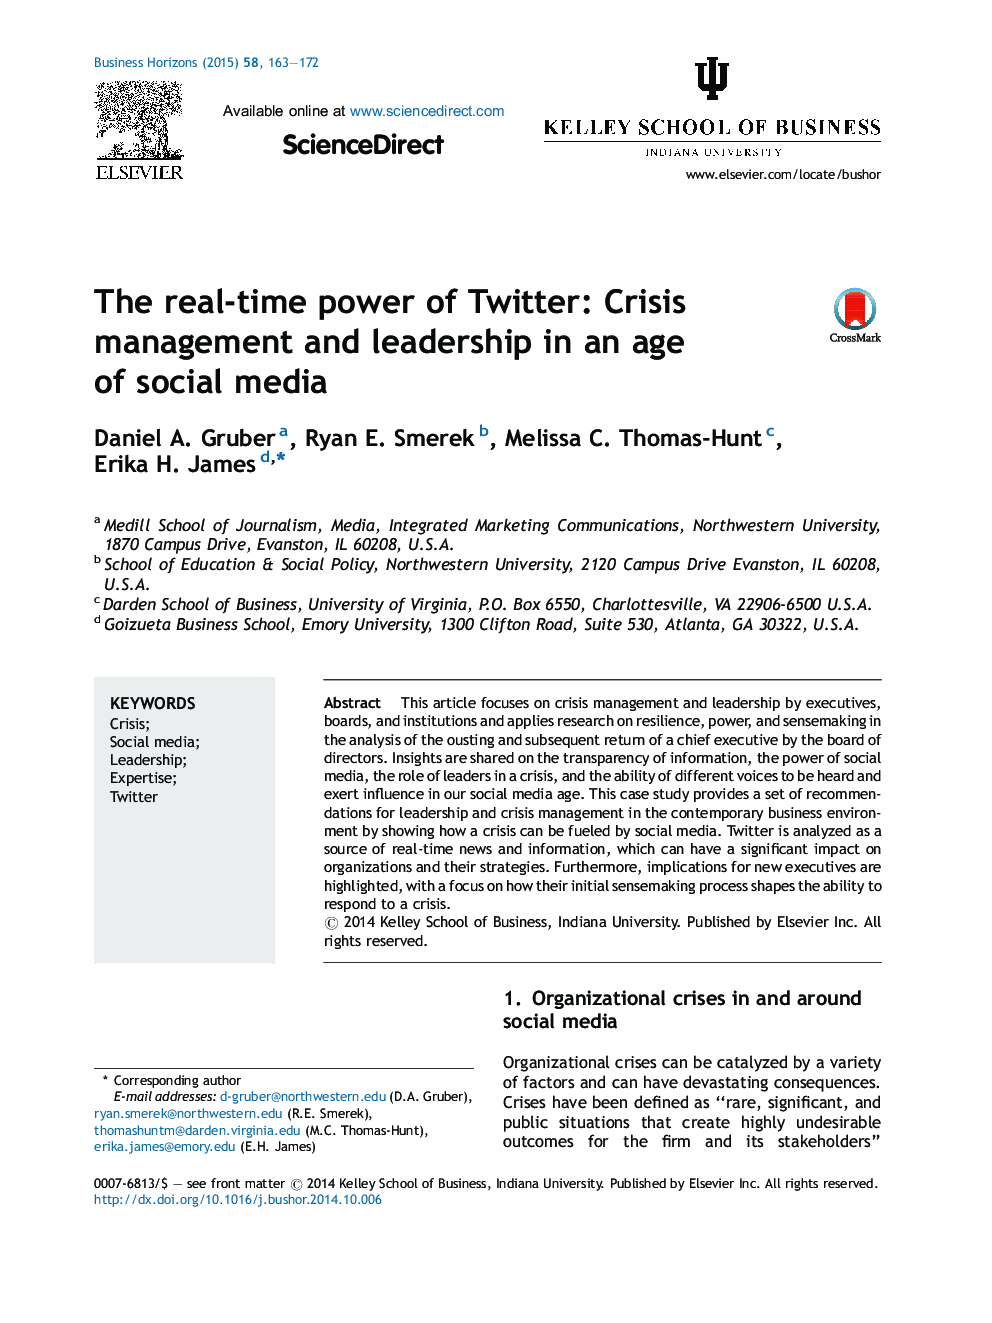 قدرت بی‌درنگ (real-time) توئیتر: مدیریت بحران و رهبری در عصر رسانه‌های اجتماعی